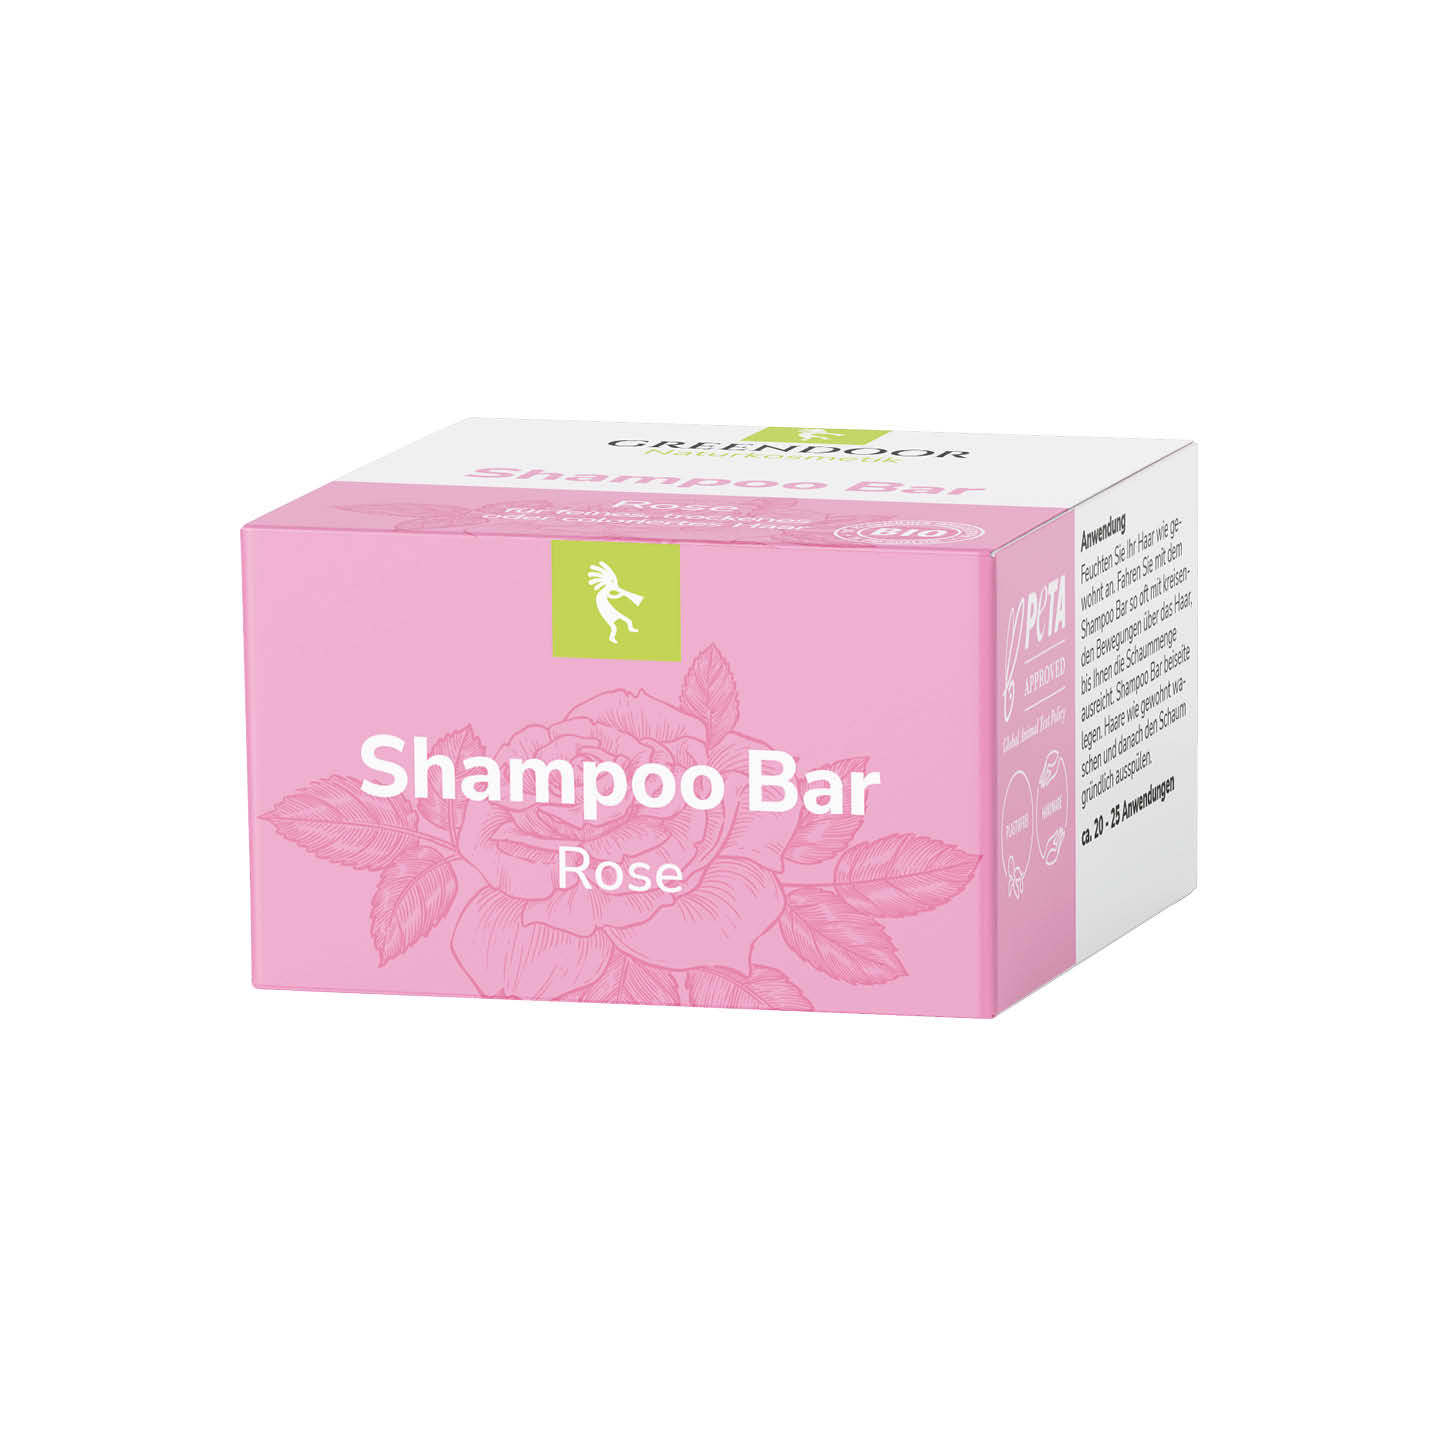 Shampoo Bar Rose